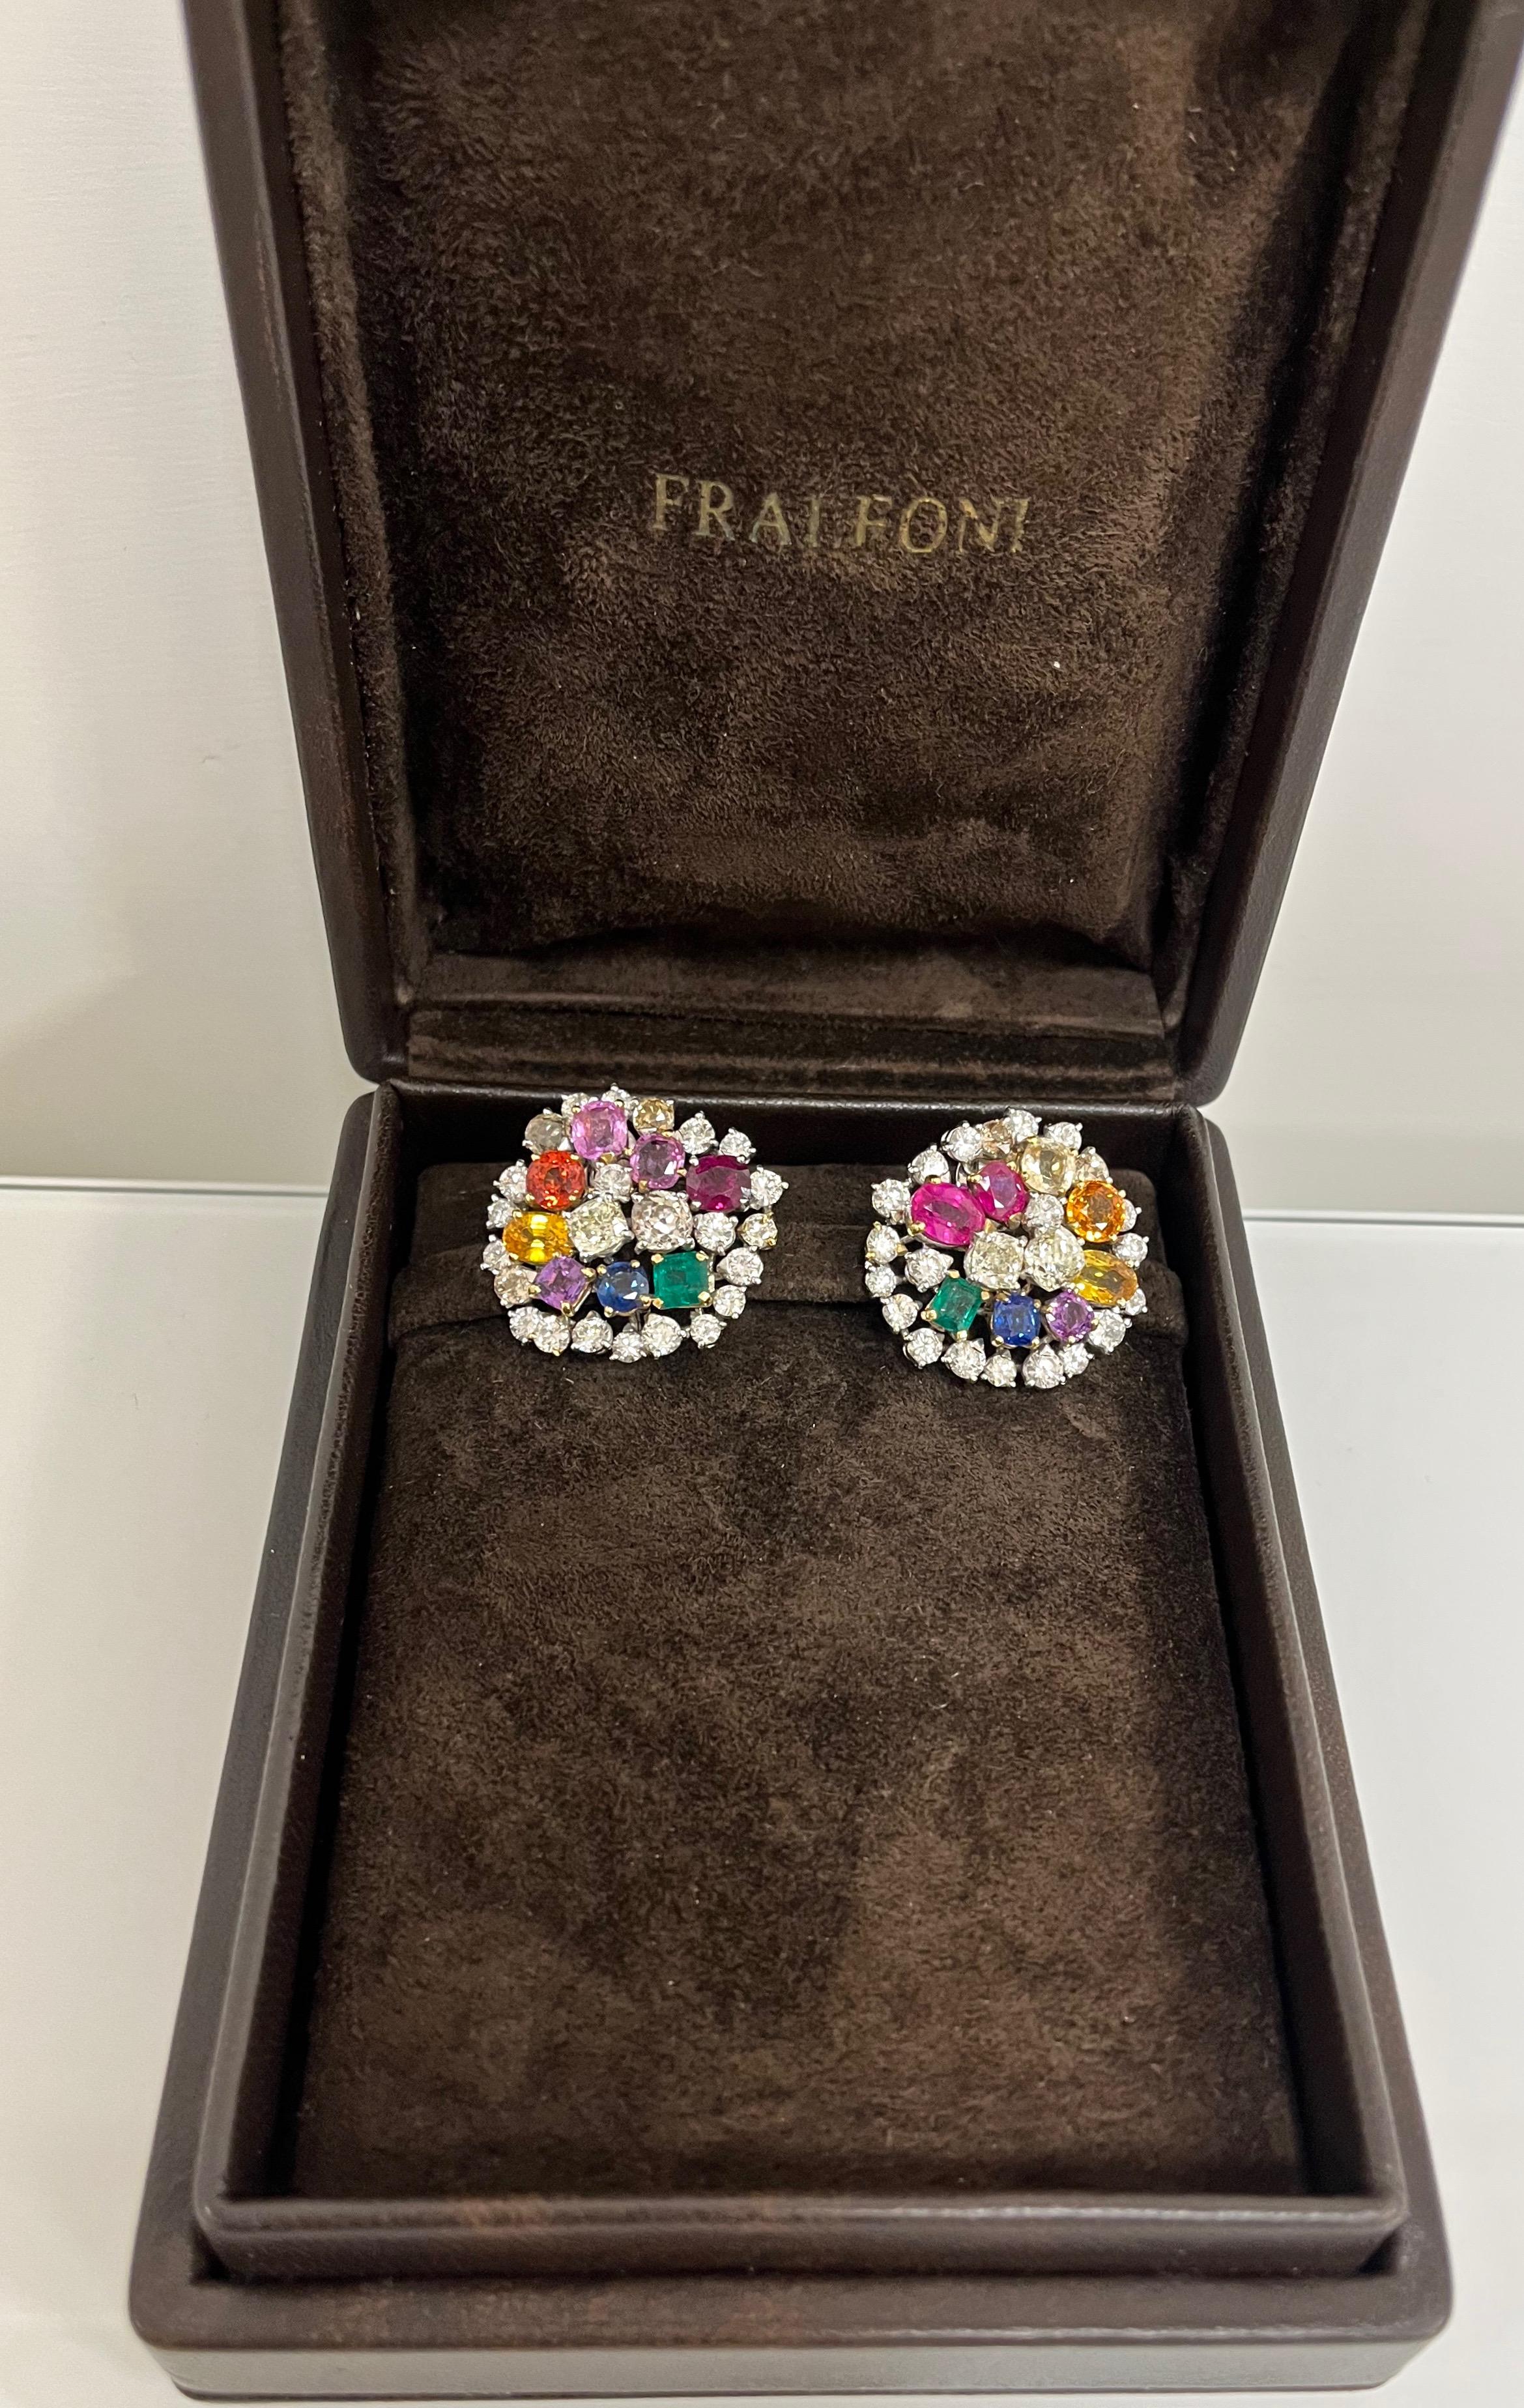 Fraleoni 18 Karat White Gold Diamonds Rubies Emeralds Sapphires Earrings For Sale 5